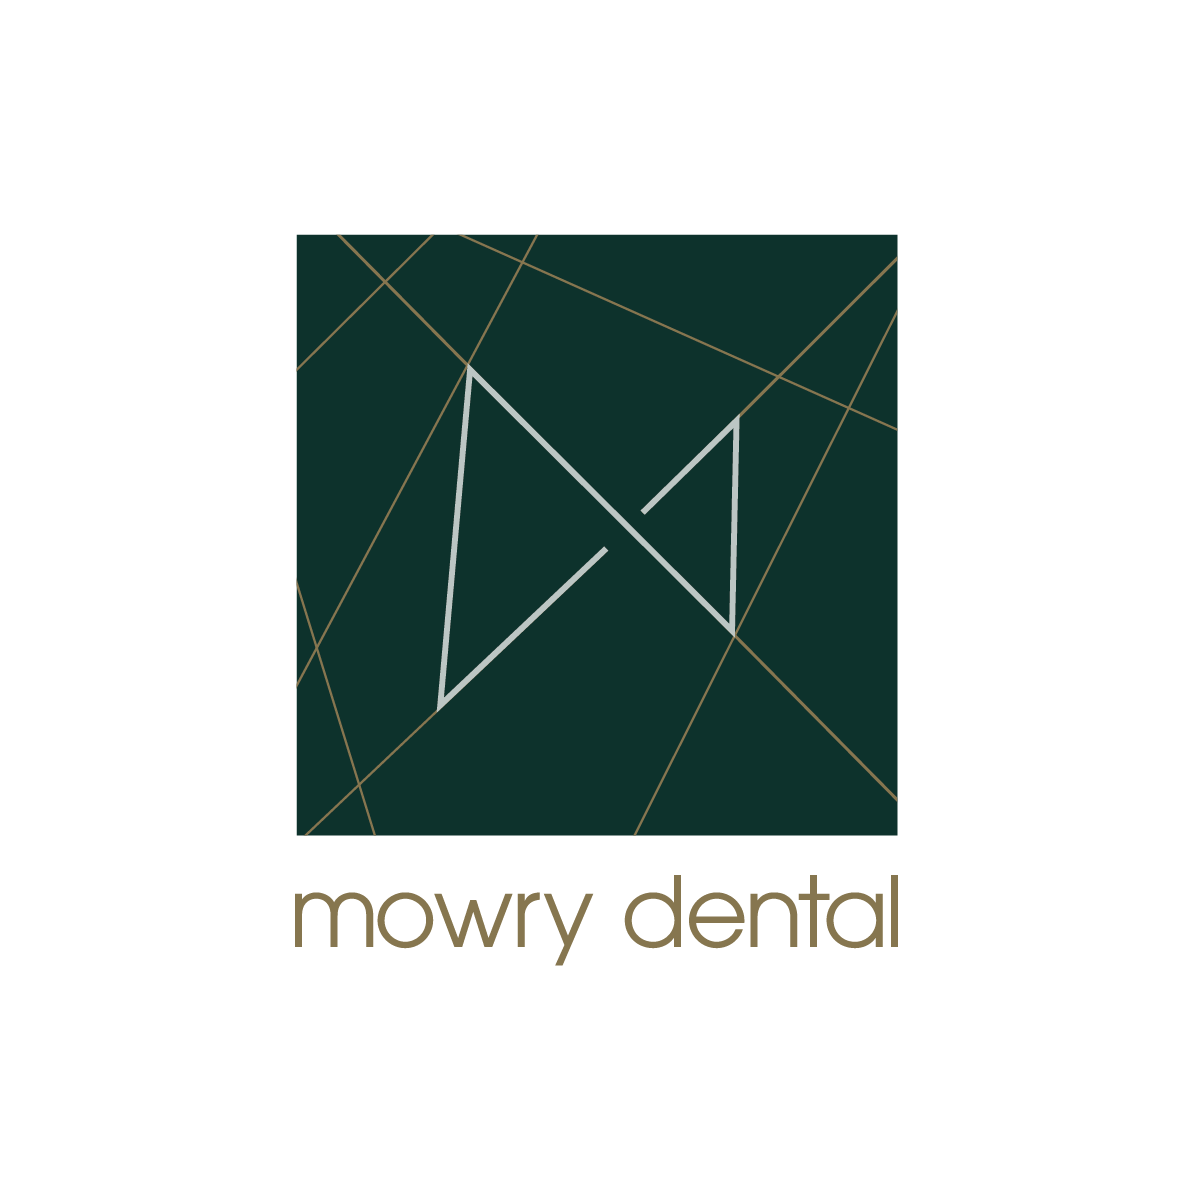 Business logo of Mowry Dental